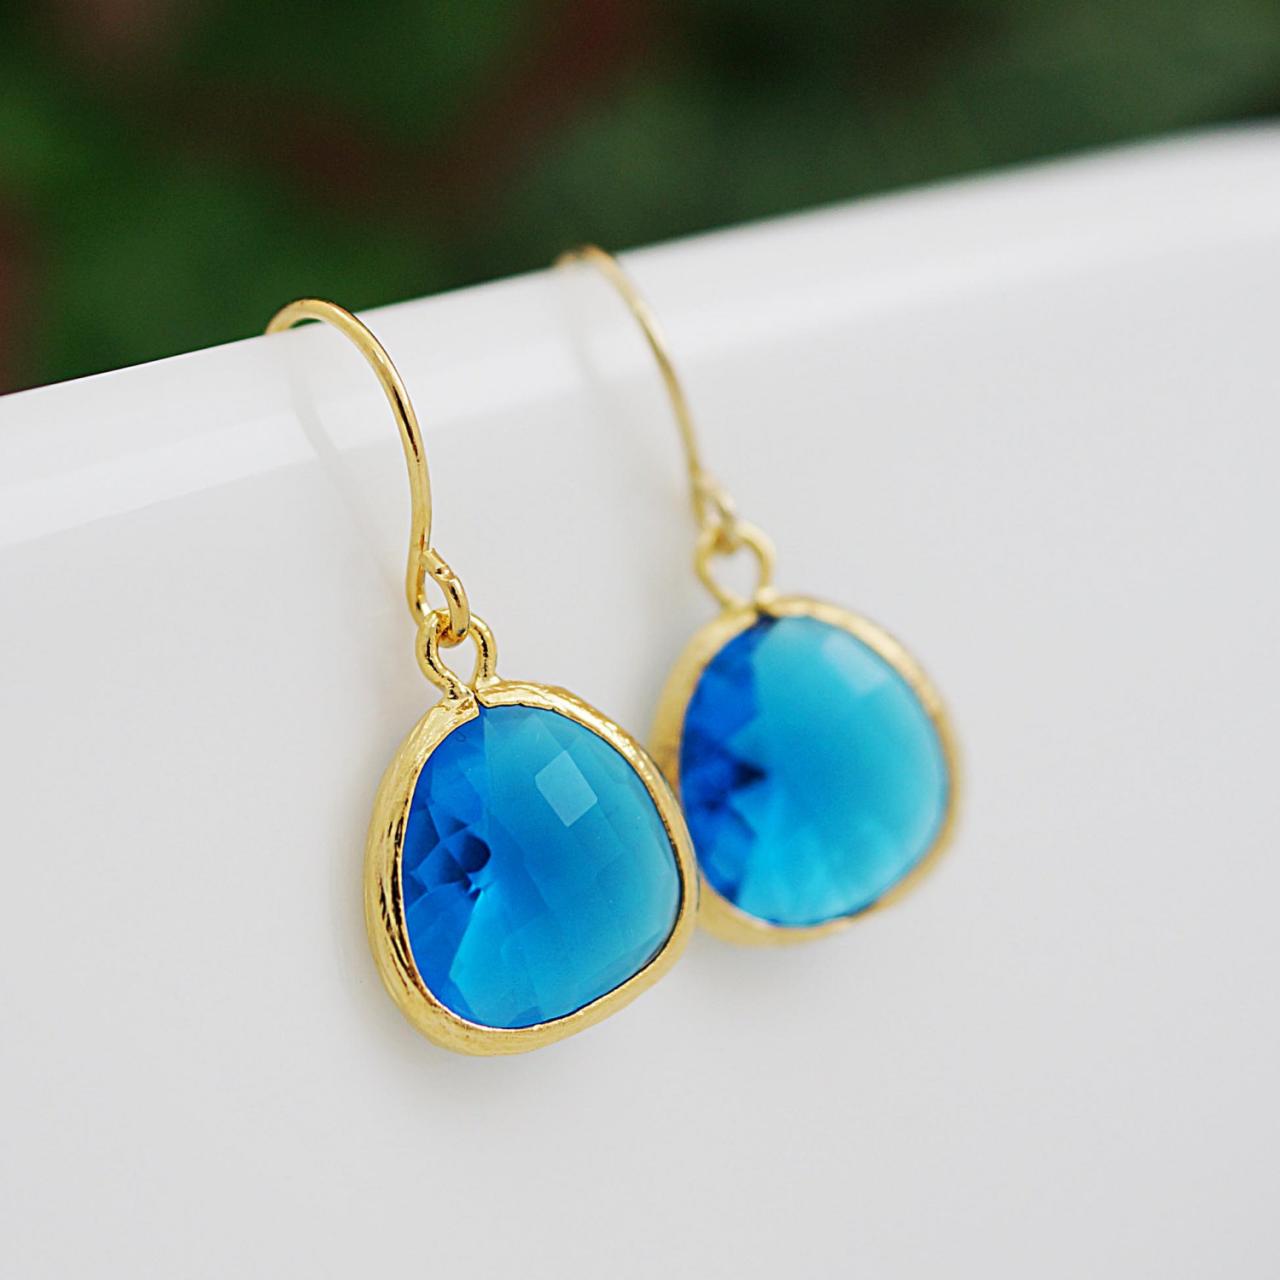 Capri Blue Glass Drop Earrings Dangle Earrings - Bridesmaid Gift, Bridesmaid Earrings, Bridesmaid Jewelry, Wedding, Christmas Gift For Her